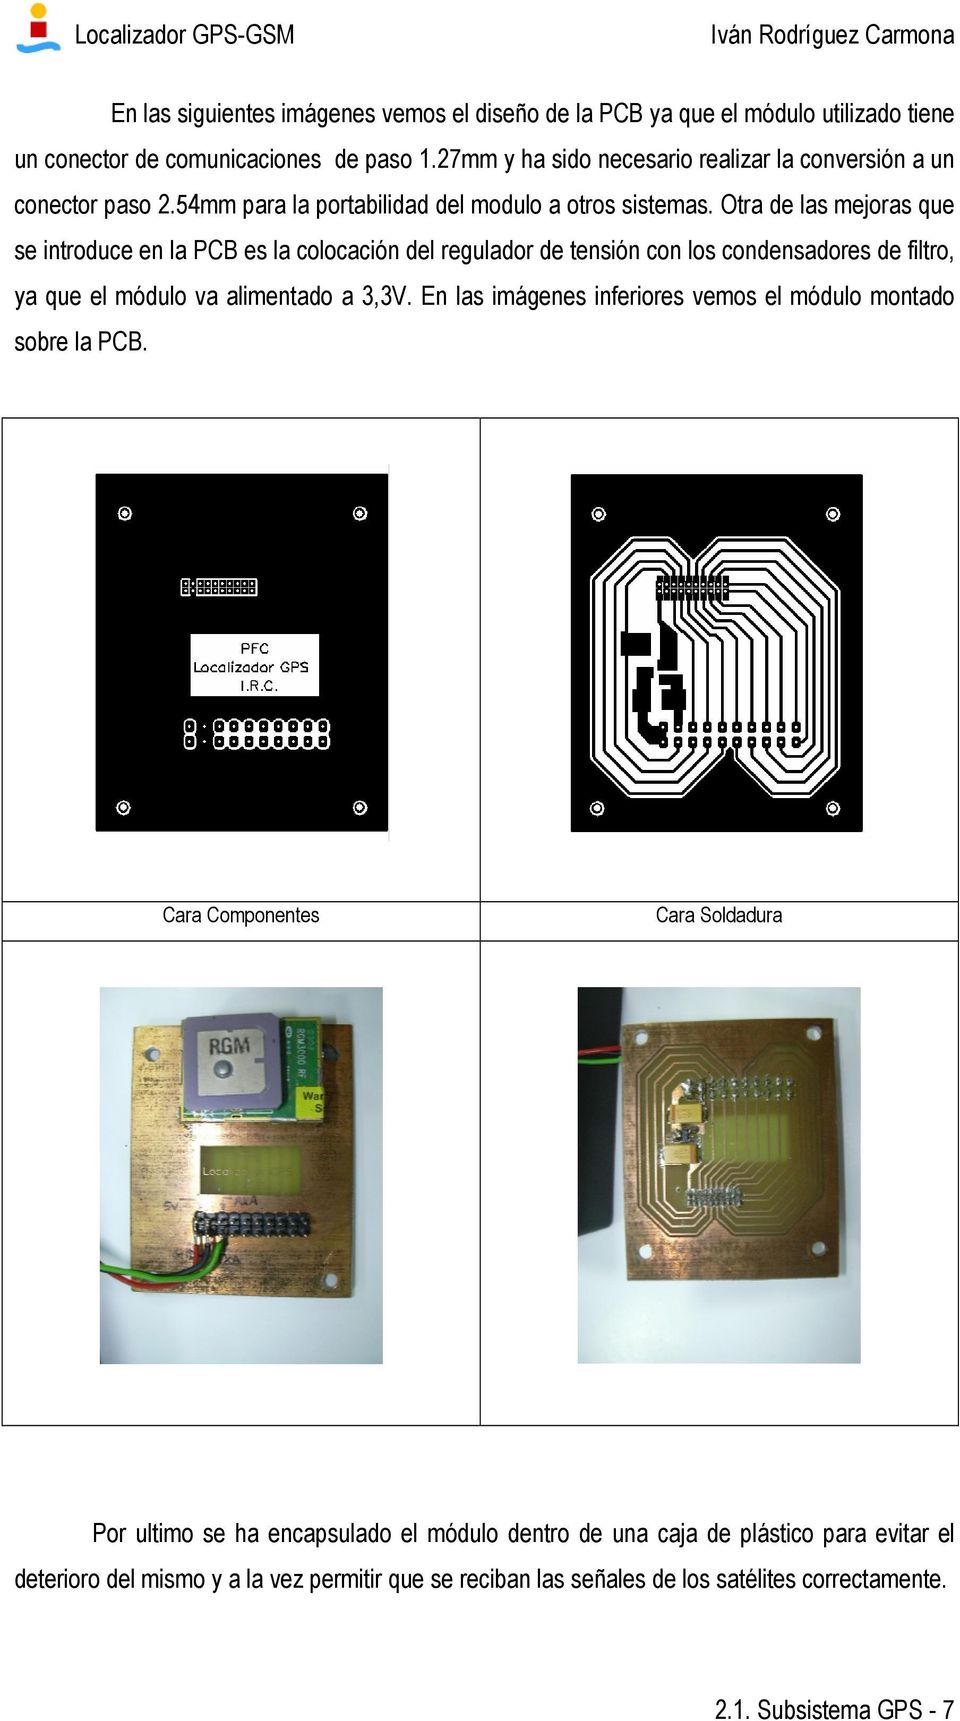 Otra de las mejoras que se introduce en la PCB es la colocación del regulador de tensión con los condensadores de filtro, ya que el módulo va alimentado a 3,3V.